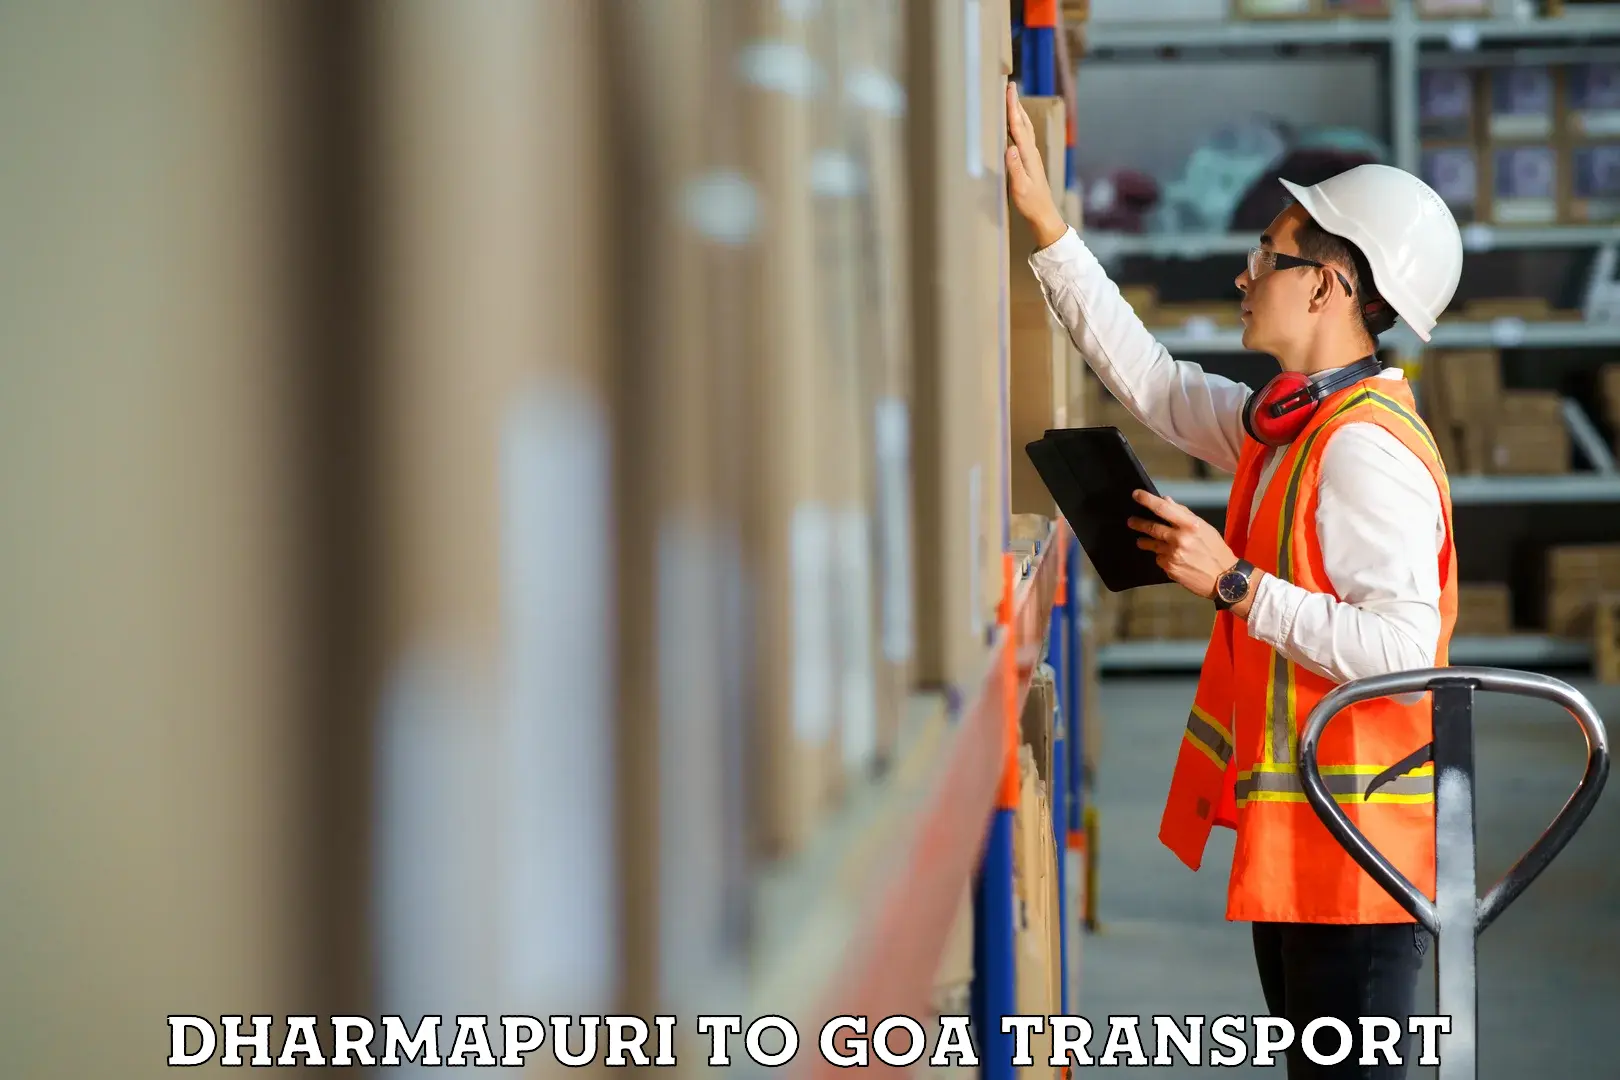 Nearest transport service Dharmapuri to Panaji